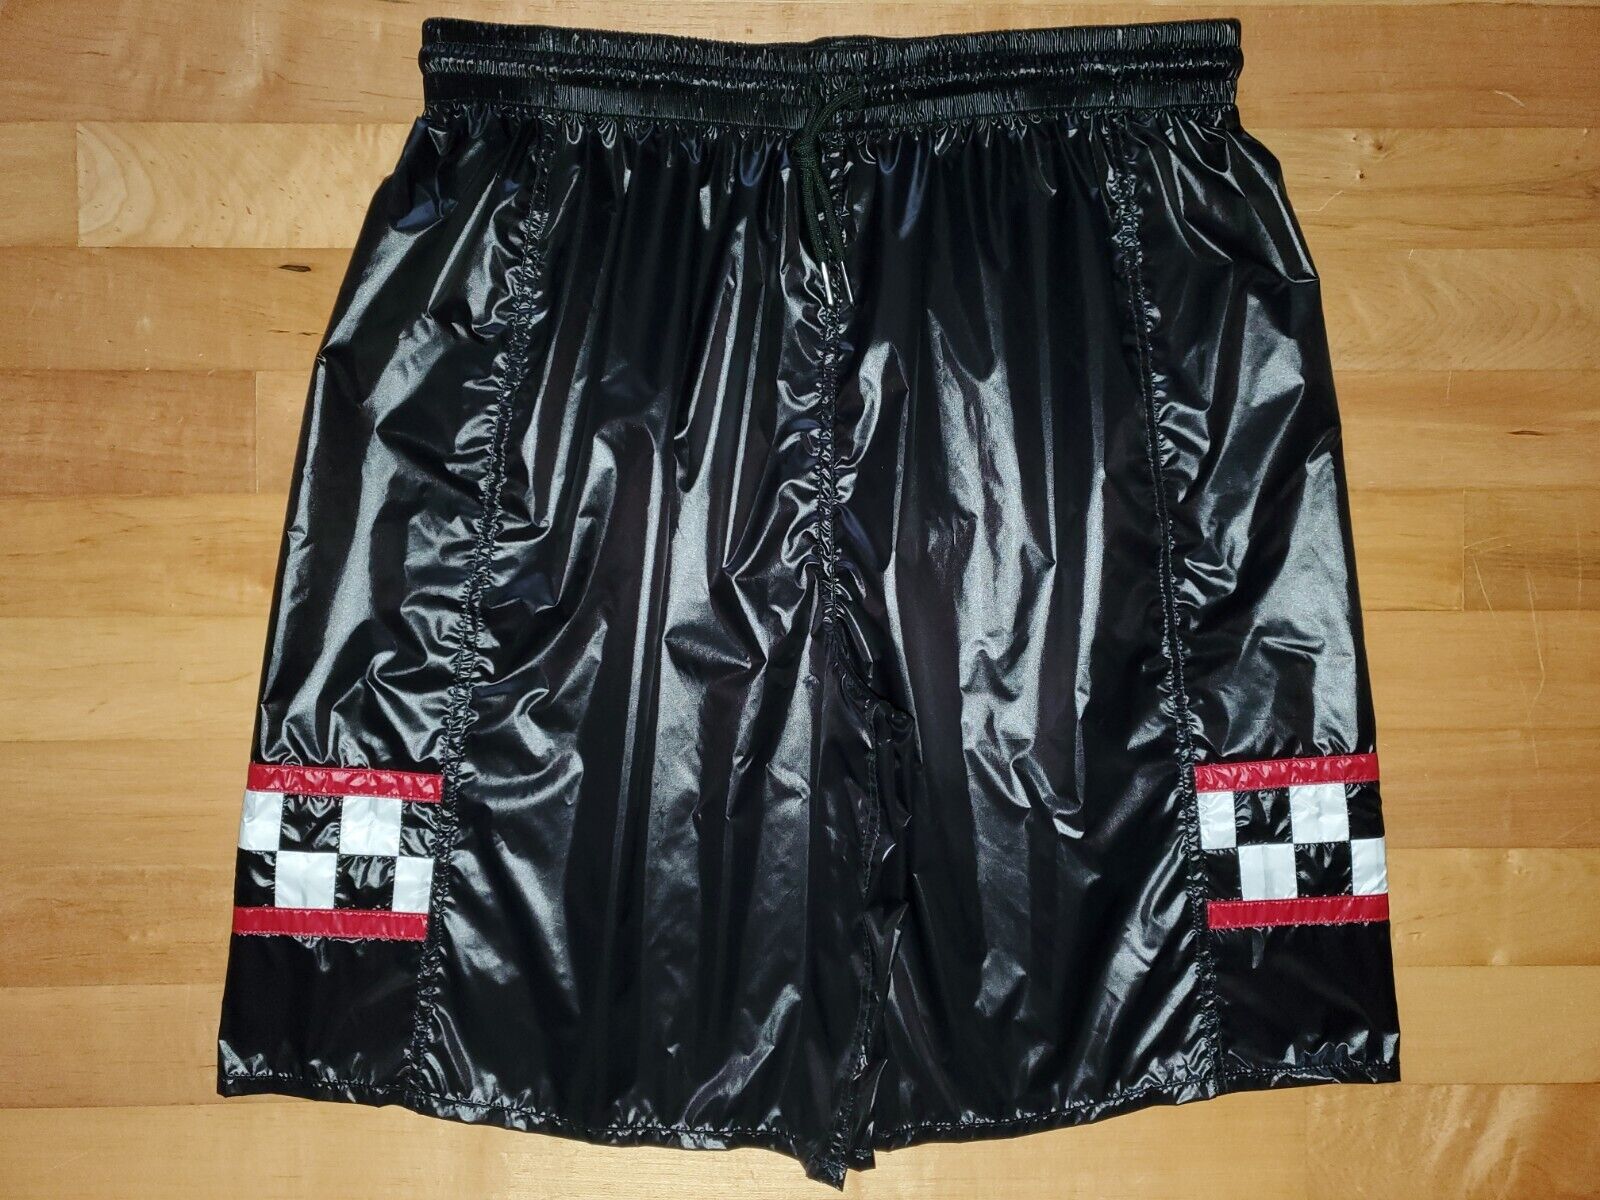 Shiny Nylon Black Wet Look Medium Length Shorts Checker Style - Size S